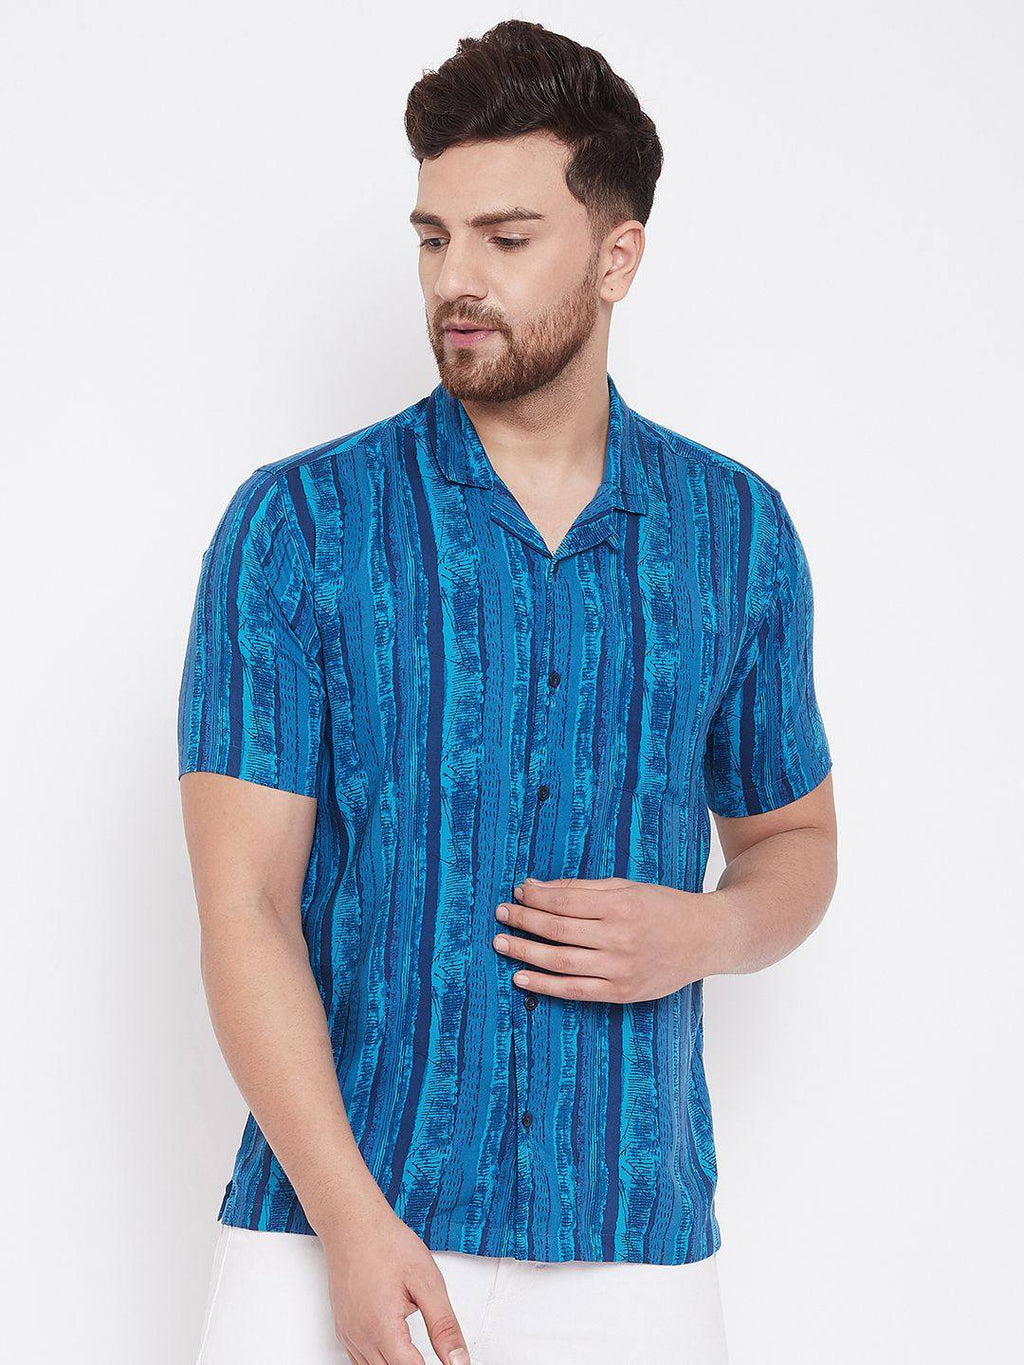 Blue Summer Casual Shirt - Ria Fashions